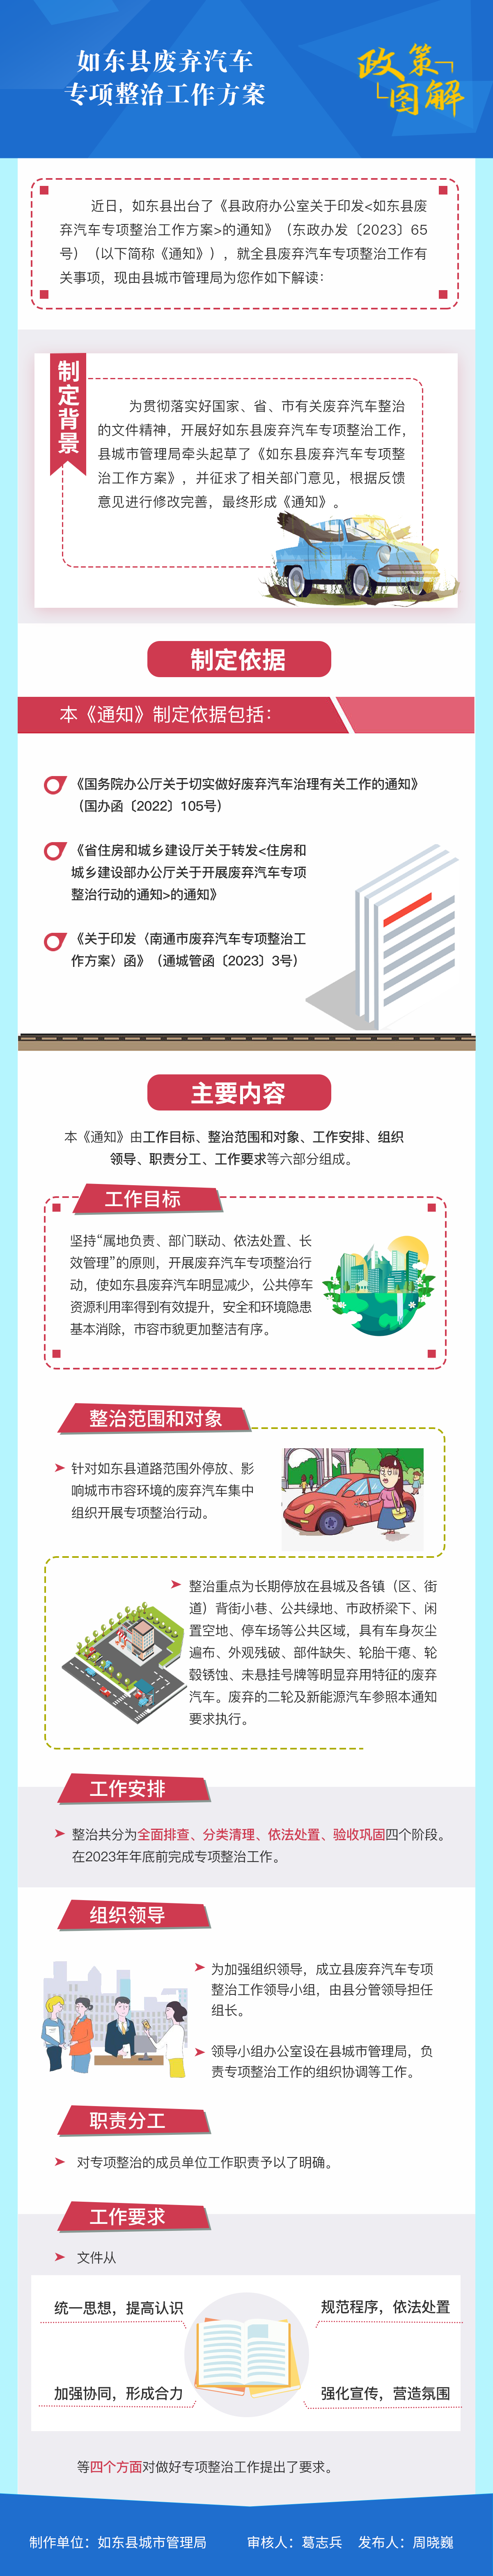 如东县废弃汽车专项整治工作方案.png